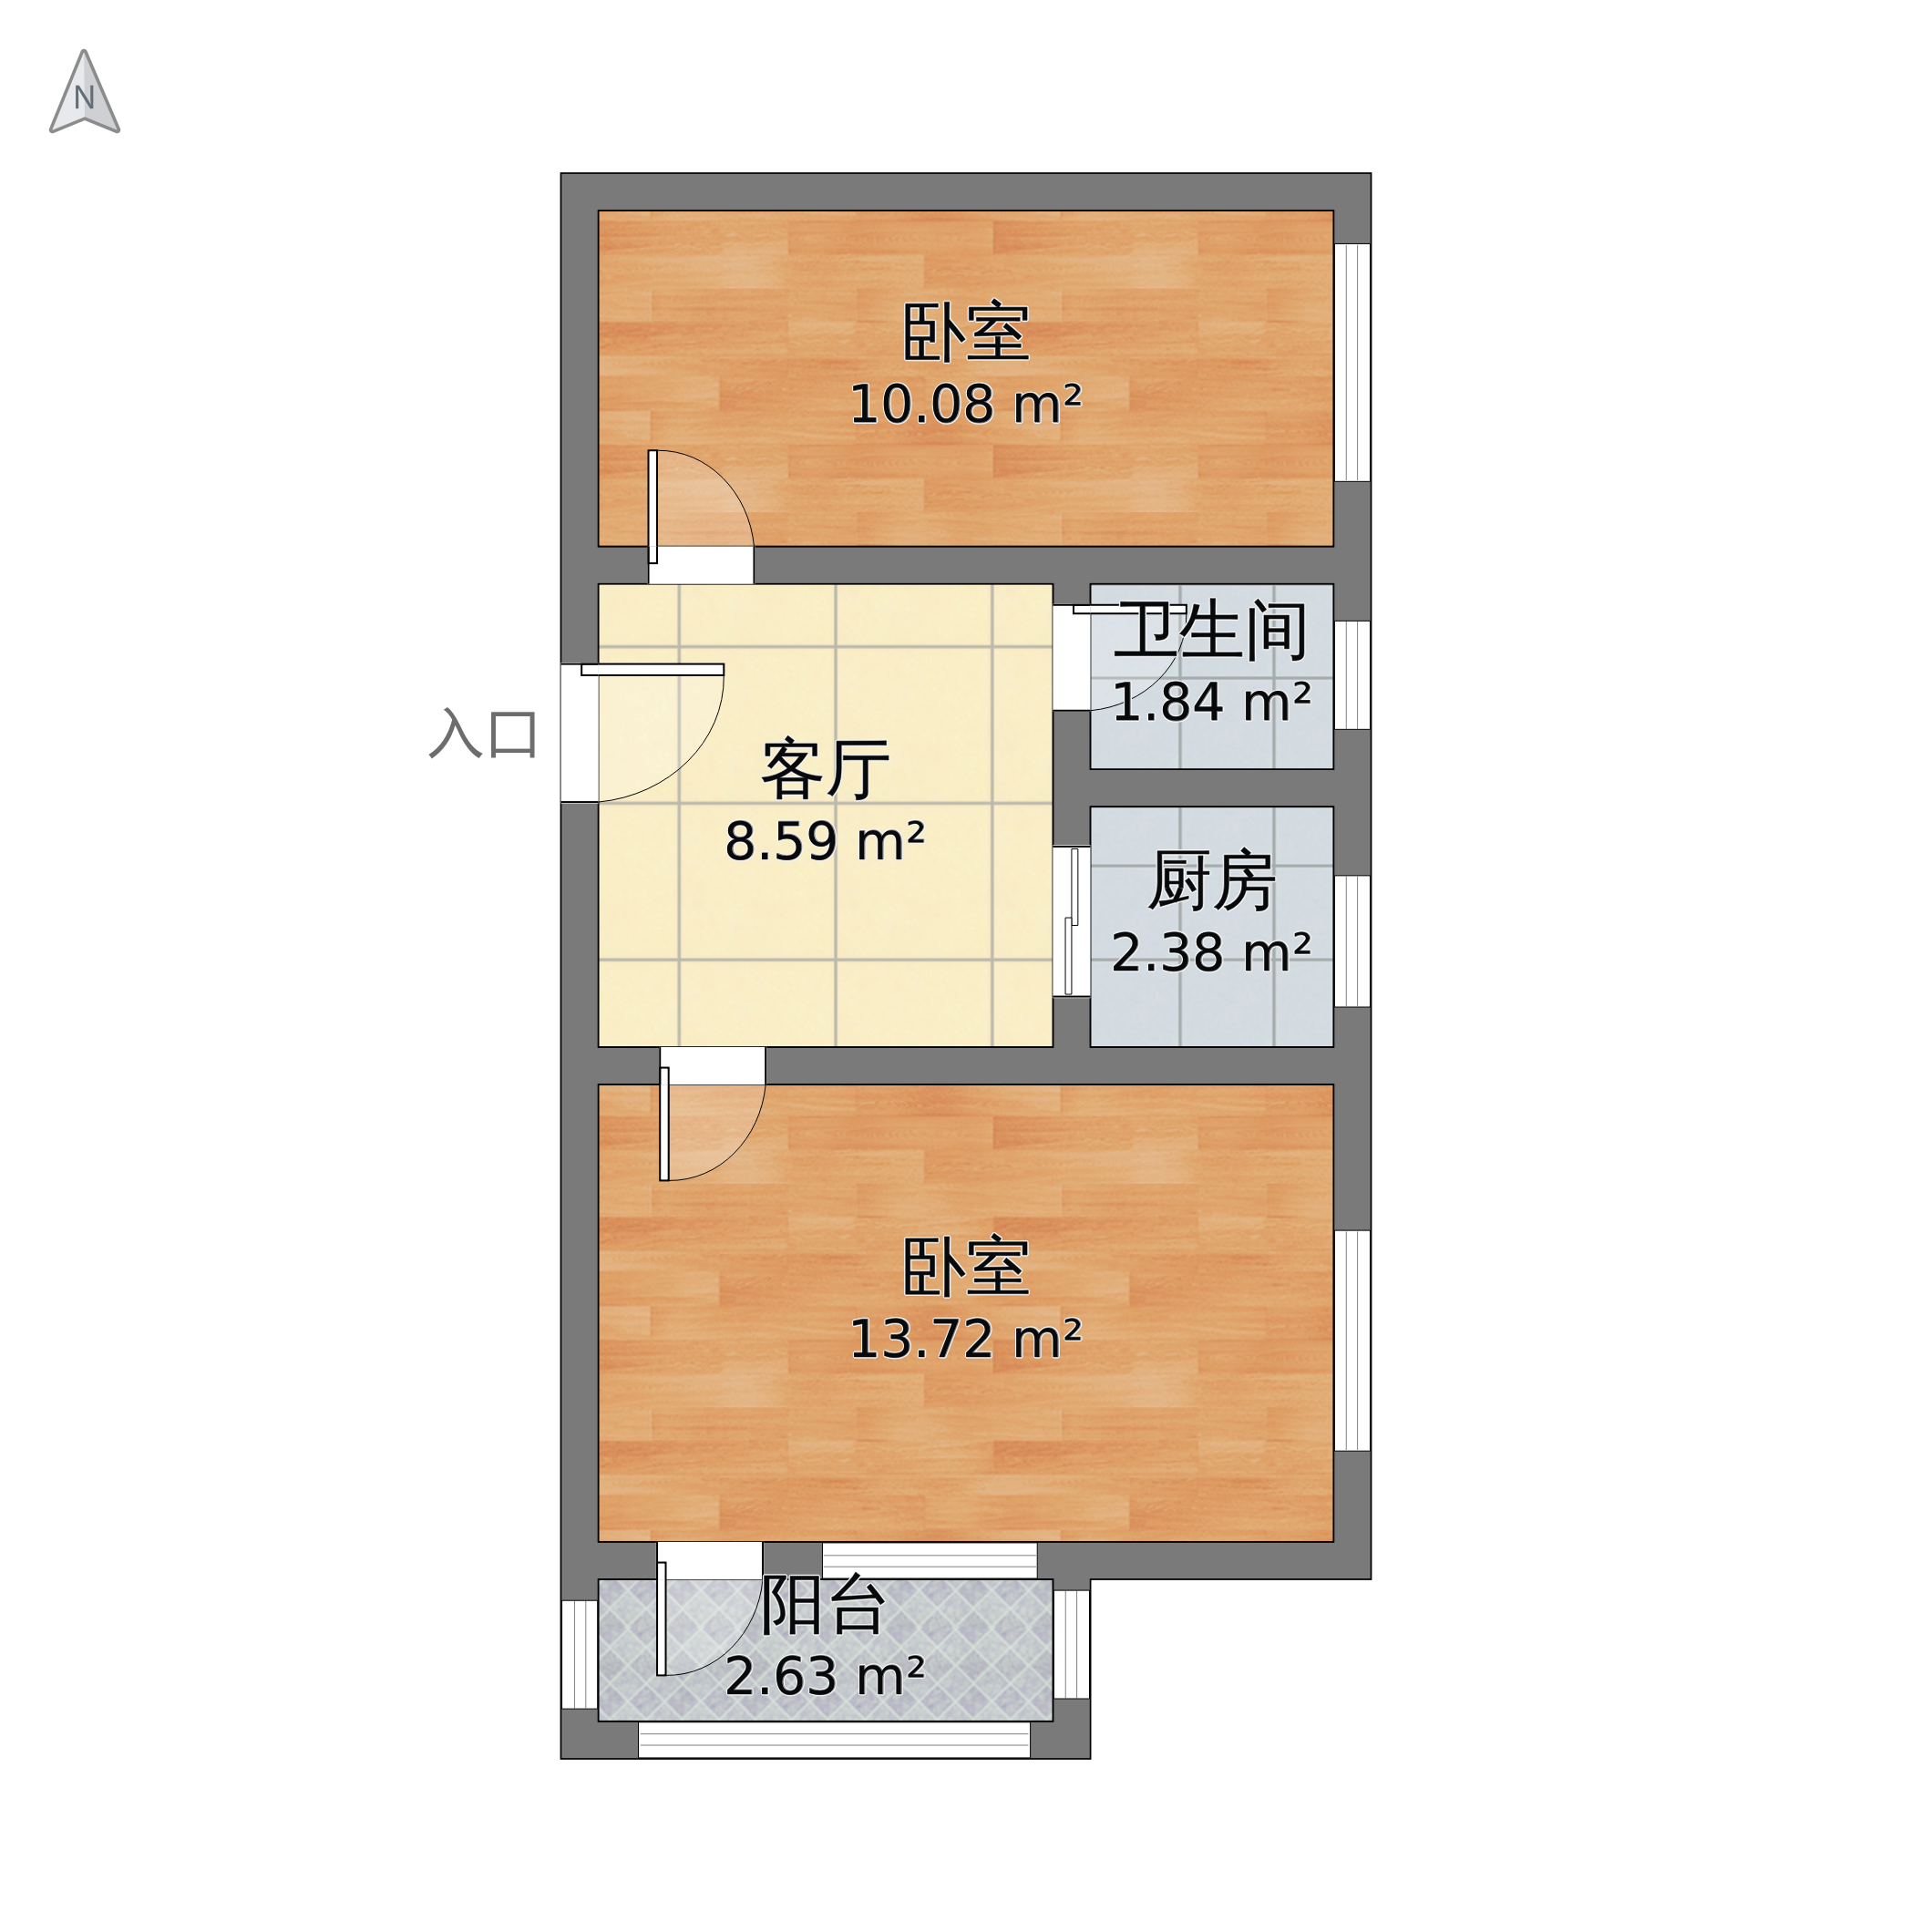 北京市朝阳区 甘露园南里二区2室1厅1卫 63m05